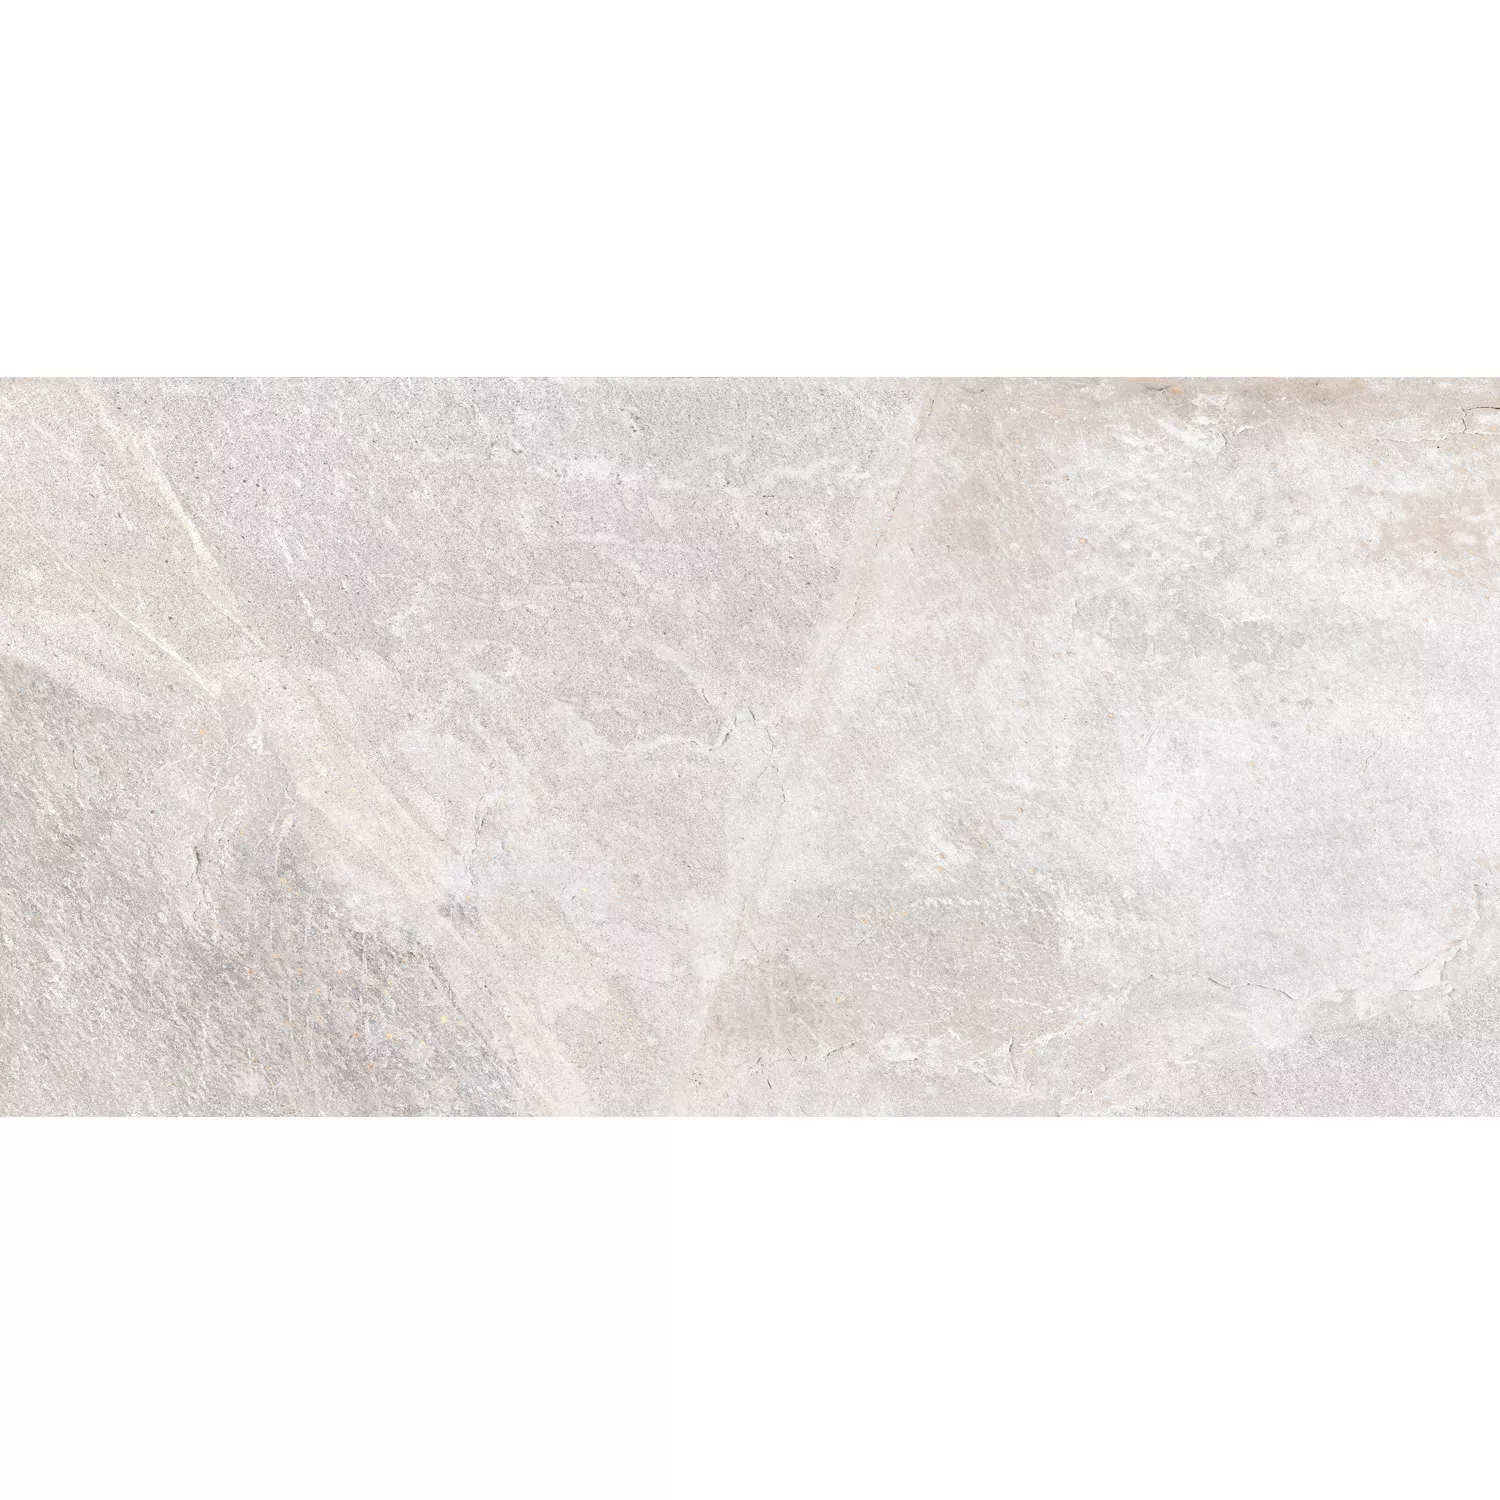 Sample Floor Tiles Homeland Natural Stone Optic R10 Bone 30x60cm